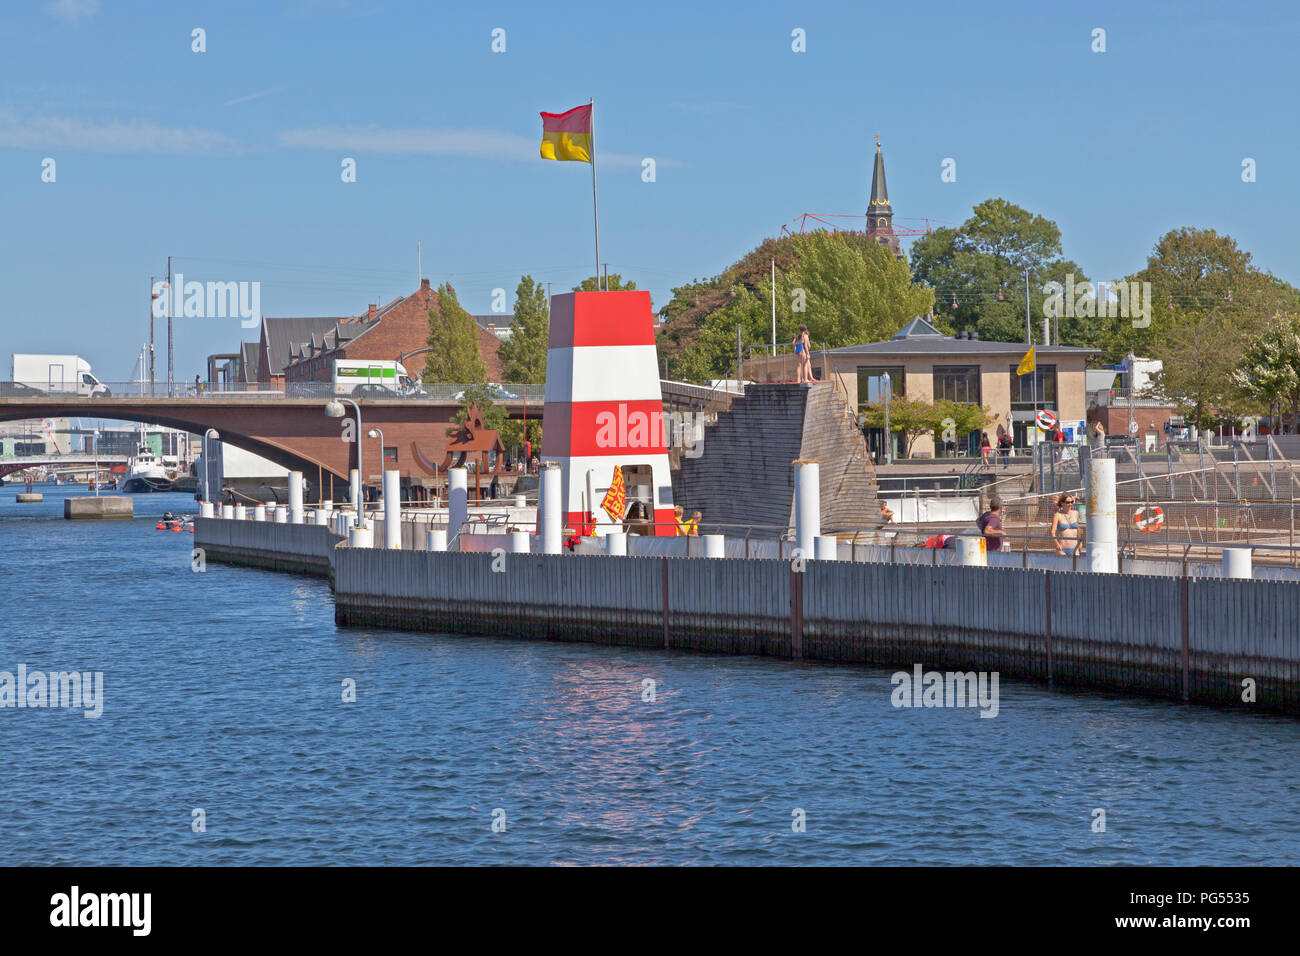 Der Hafen von Kopenhagen Badewanne Islands Brygge im inneren Hafen von Kopenhagen an einem warmen und sonnigen Sommer Tag von den wichtigsten Hafen Kanal gesehen. Stockfoto